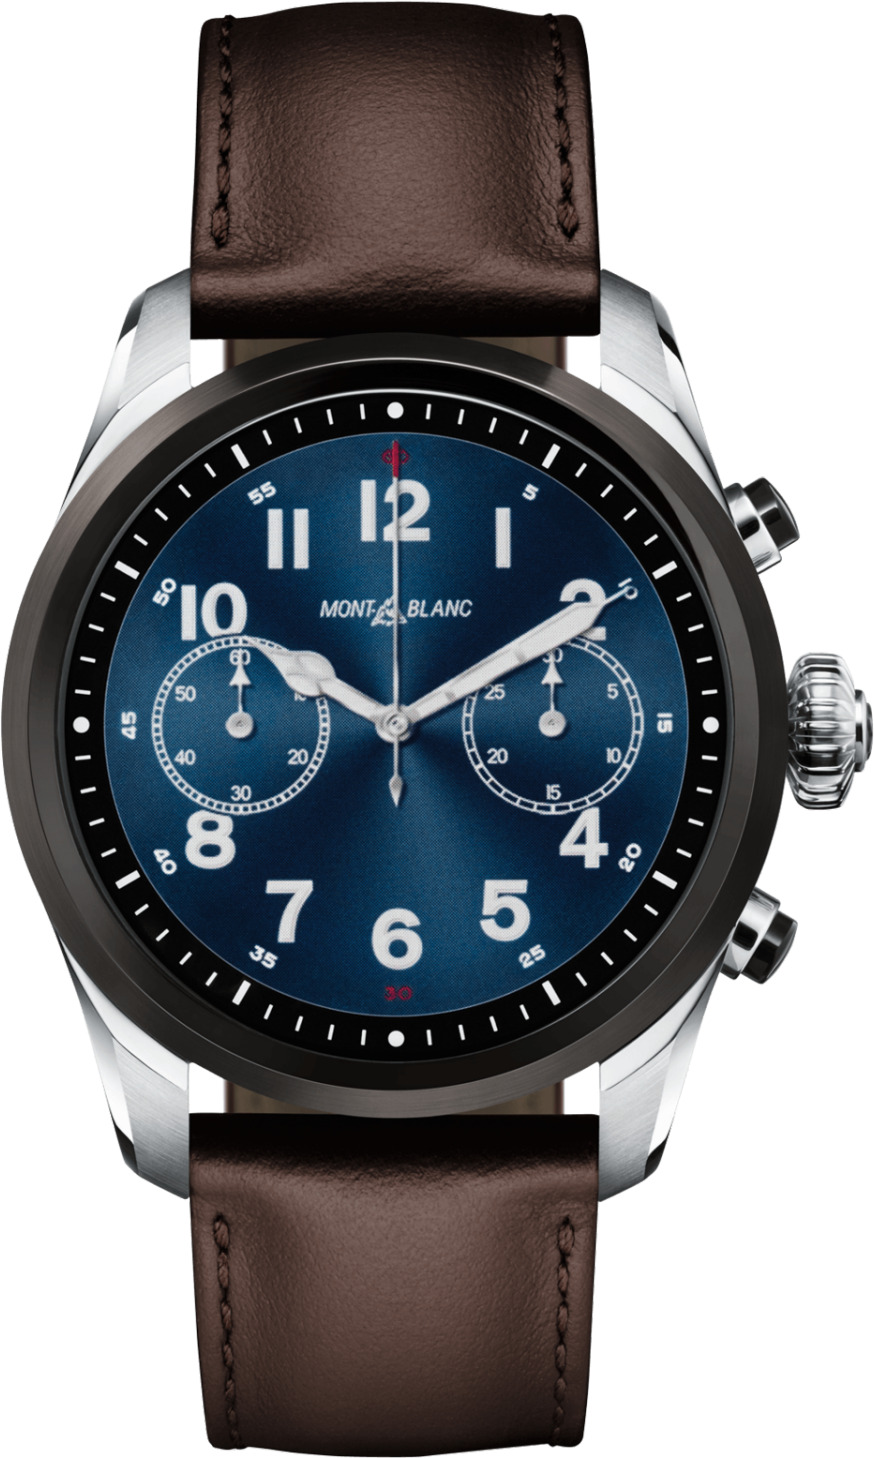 Đồng hồ nam Montblanc Summit 2 119439 Smartwatch Watch 42mm